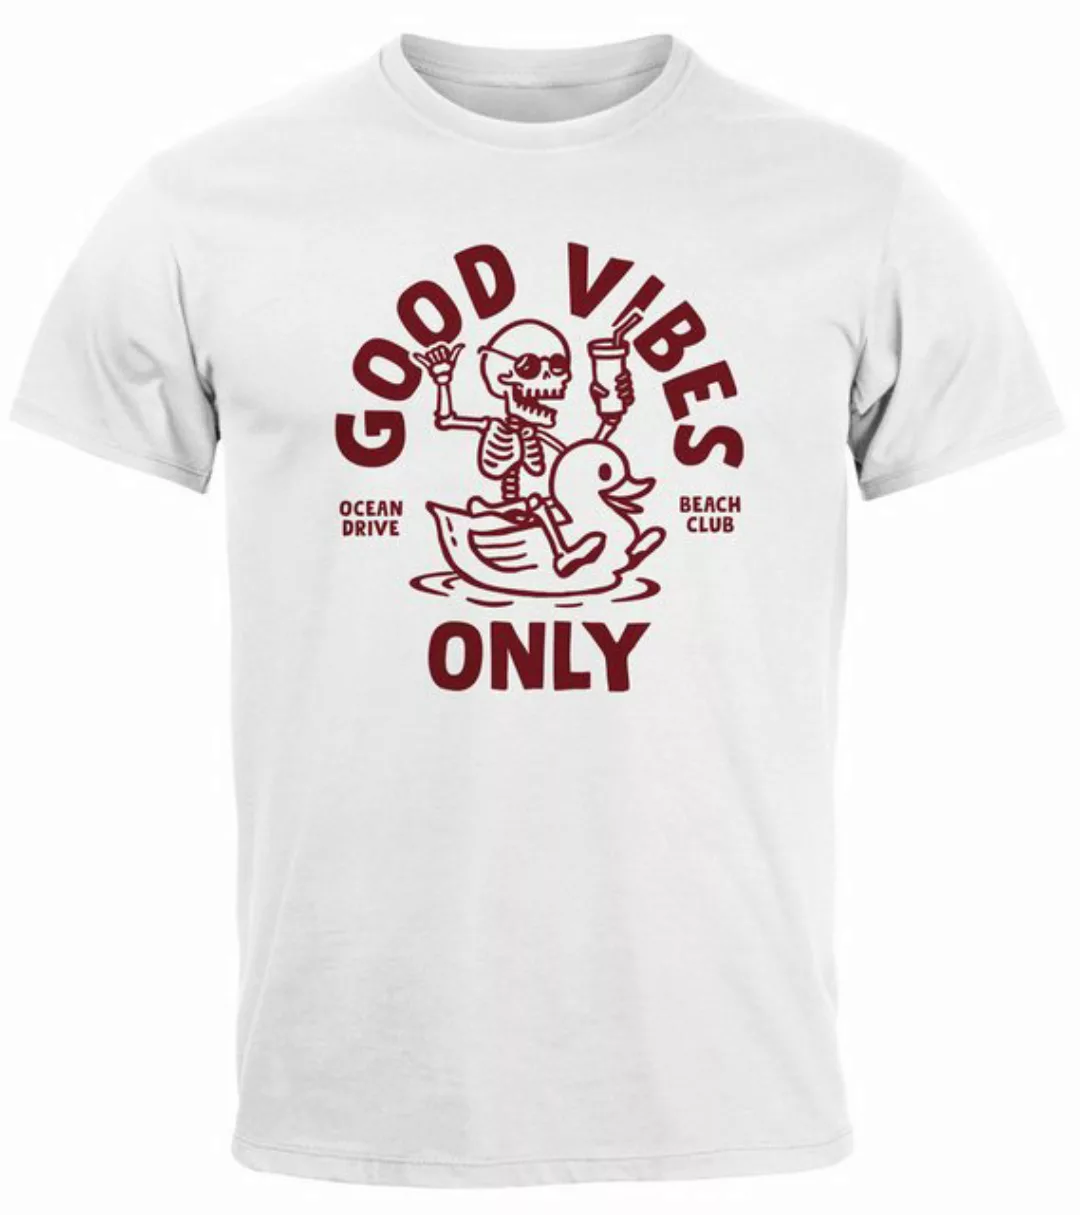 Neverless Print-Shirt Herren T-Shirt Printshirt Spruch Good Vibes Only Skel günstig online kaufen